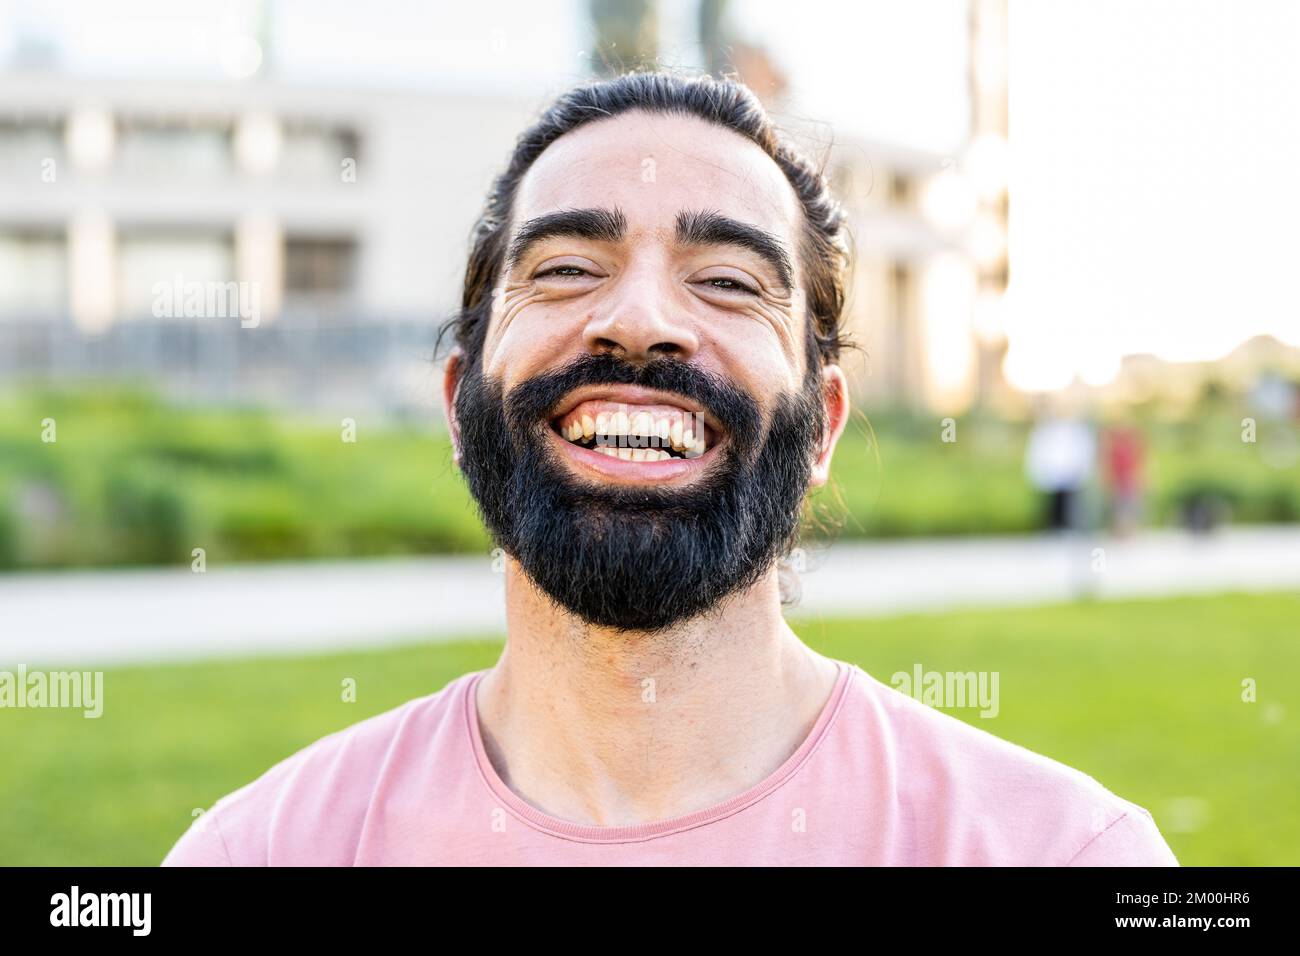 prise de vue d'un homme barbu hispanique souriant à l'appareil photo Banque D'Images